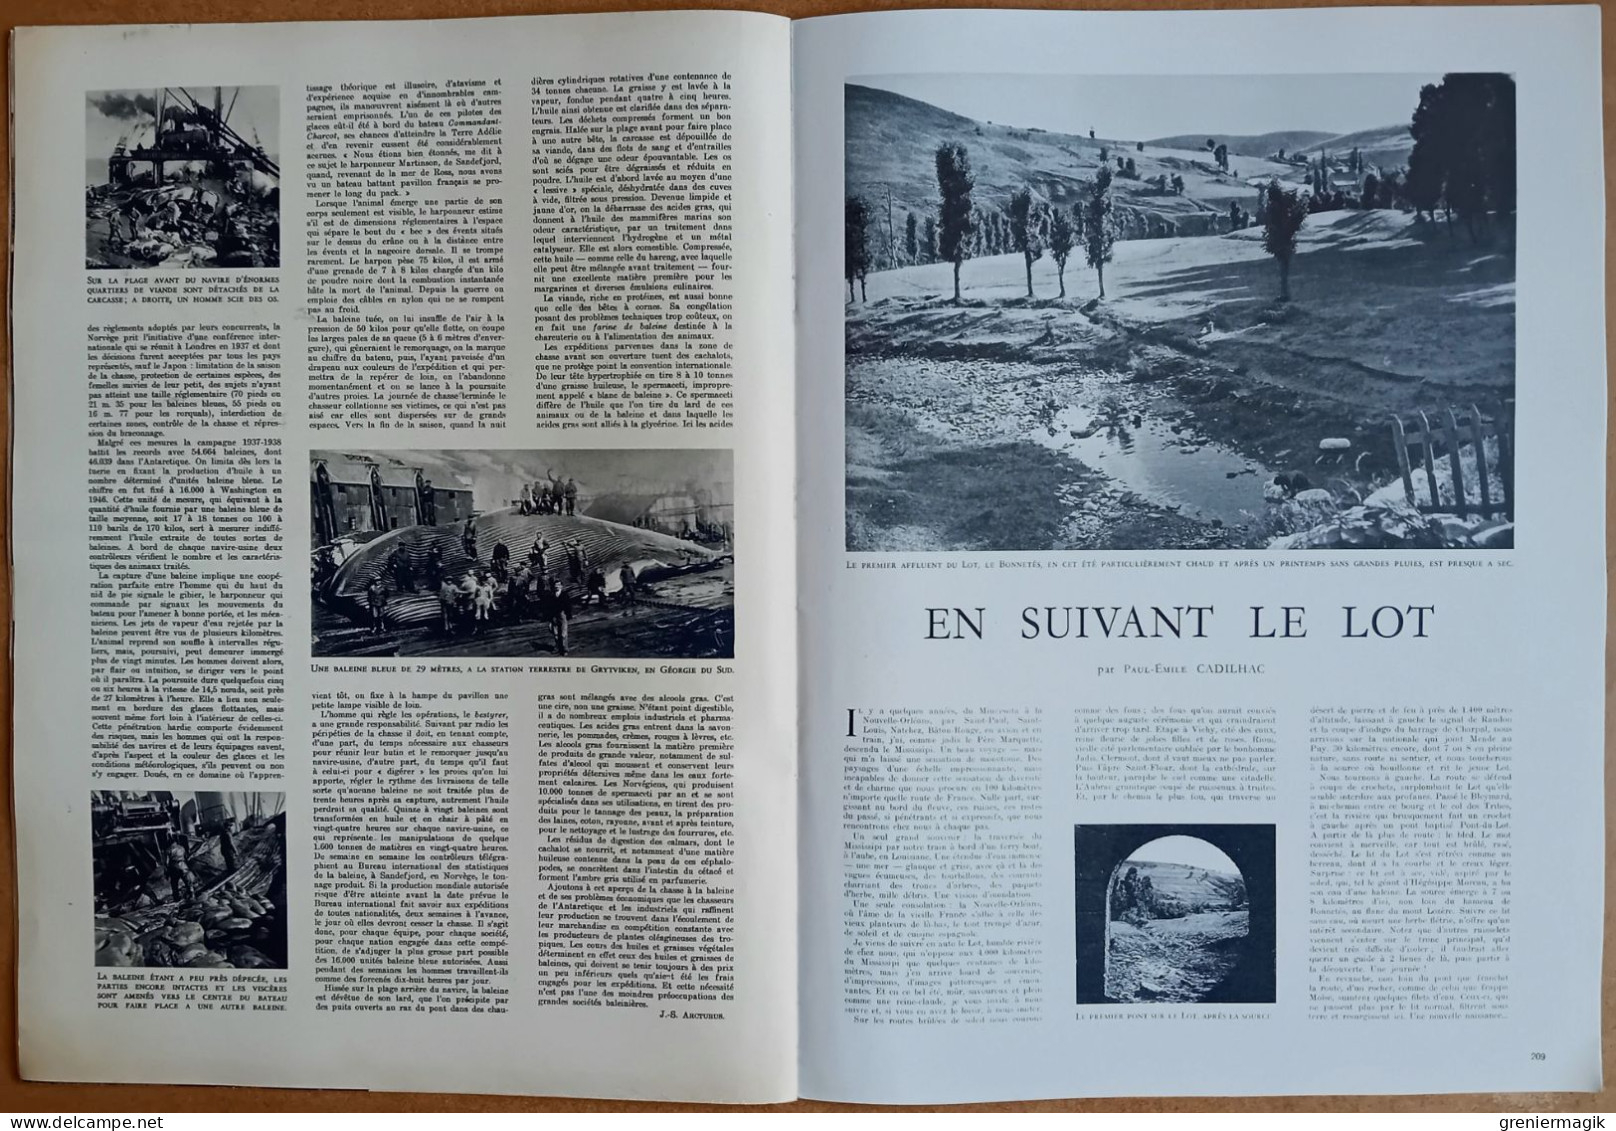 France Illustration N°202 27/08/1949 Nouvelles conventions de Genève/Portmeirion/Chasse à la baleine/Equateur/Salzbourg